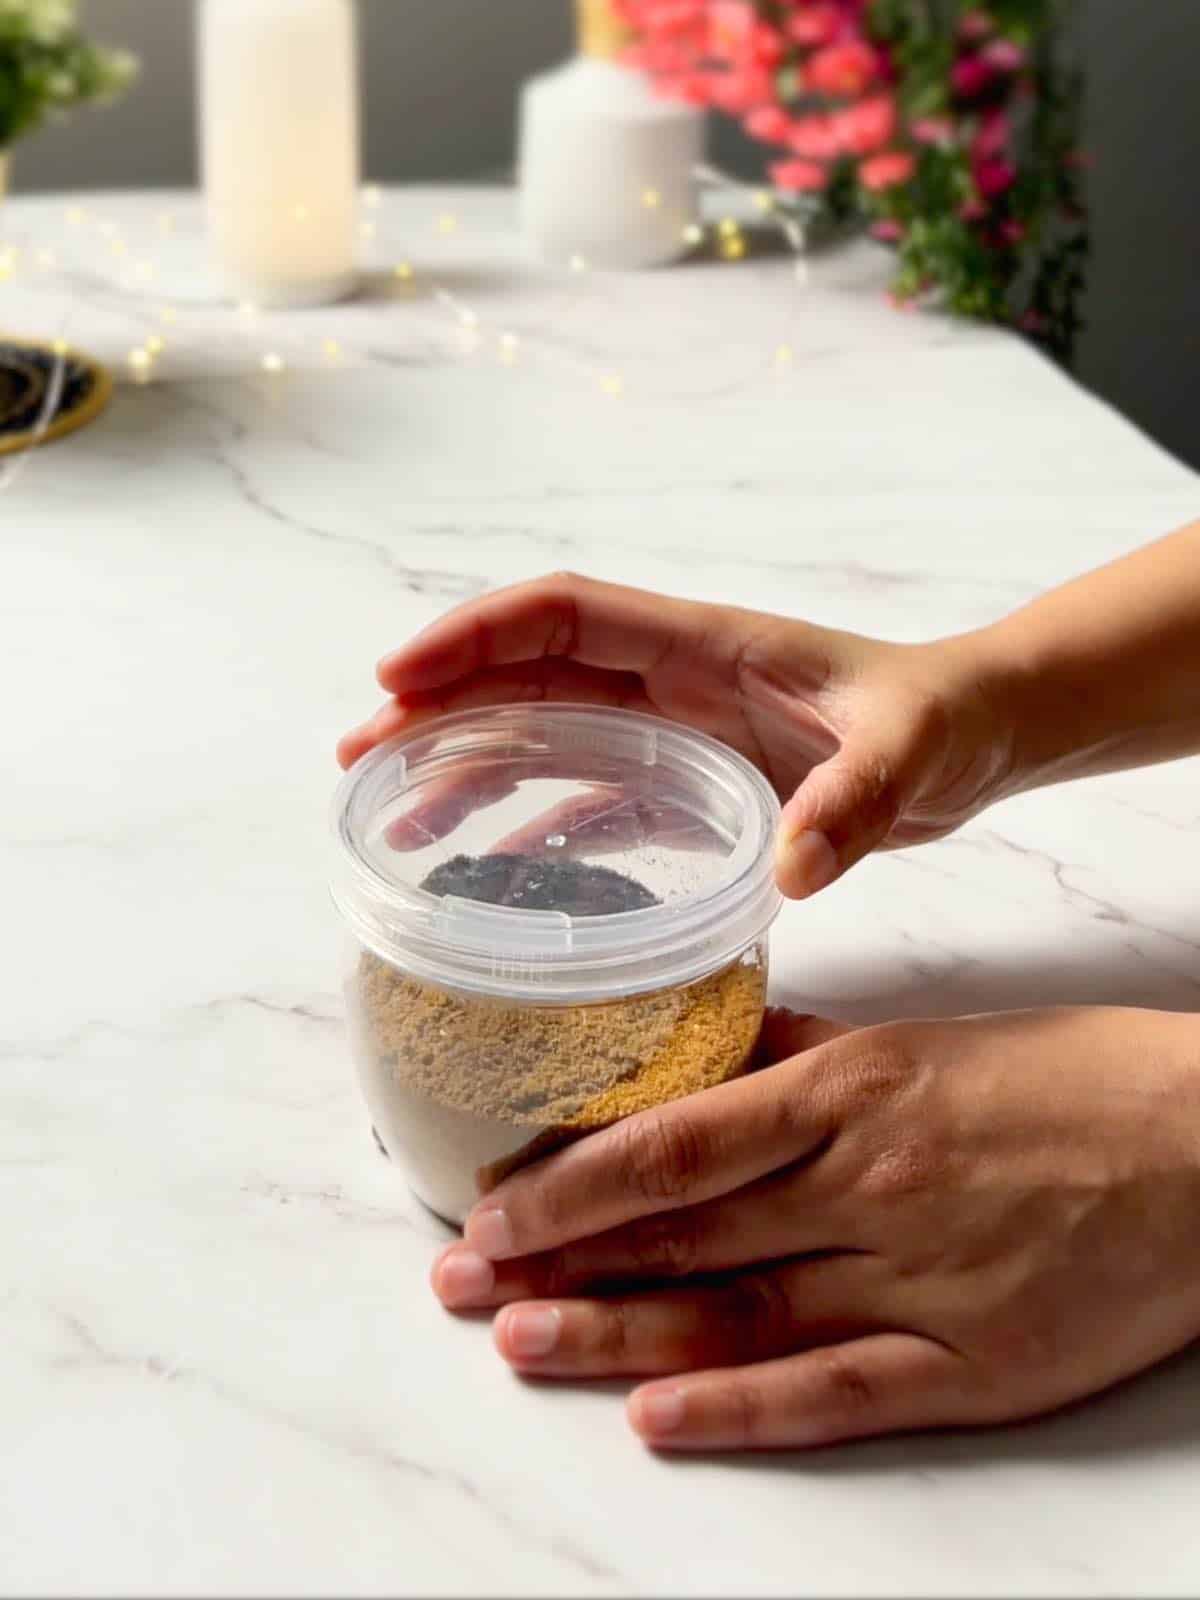 storing ground cumin powder in an airtight jar